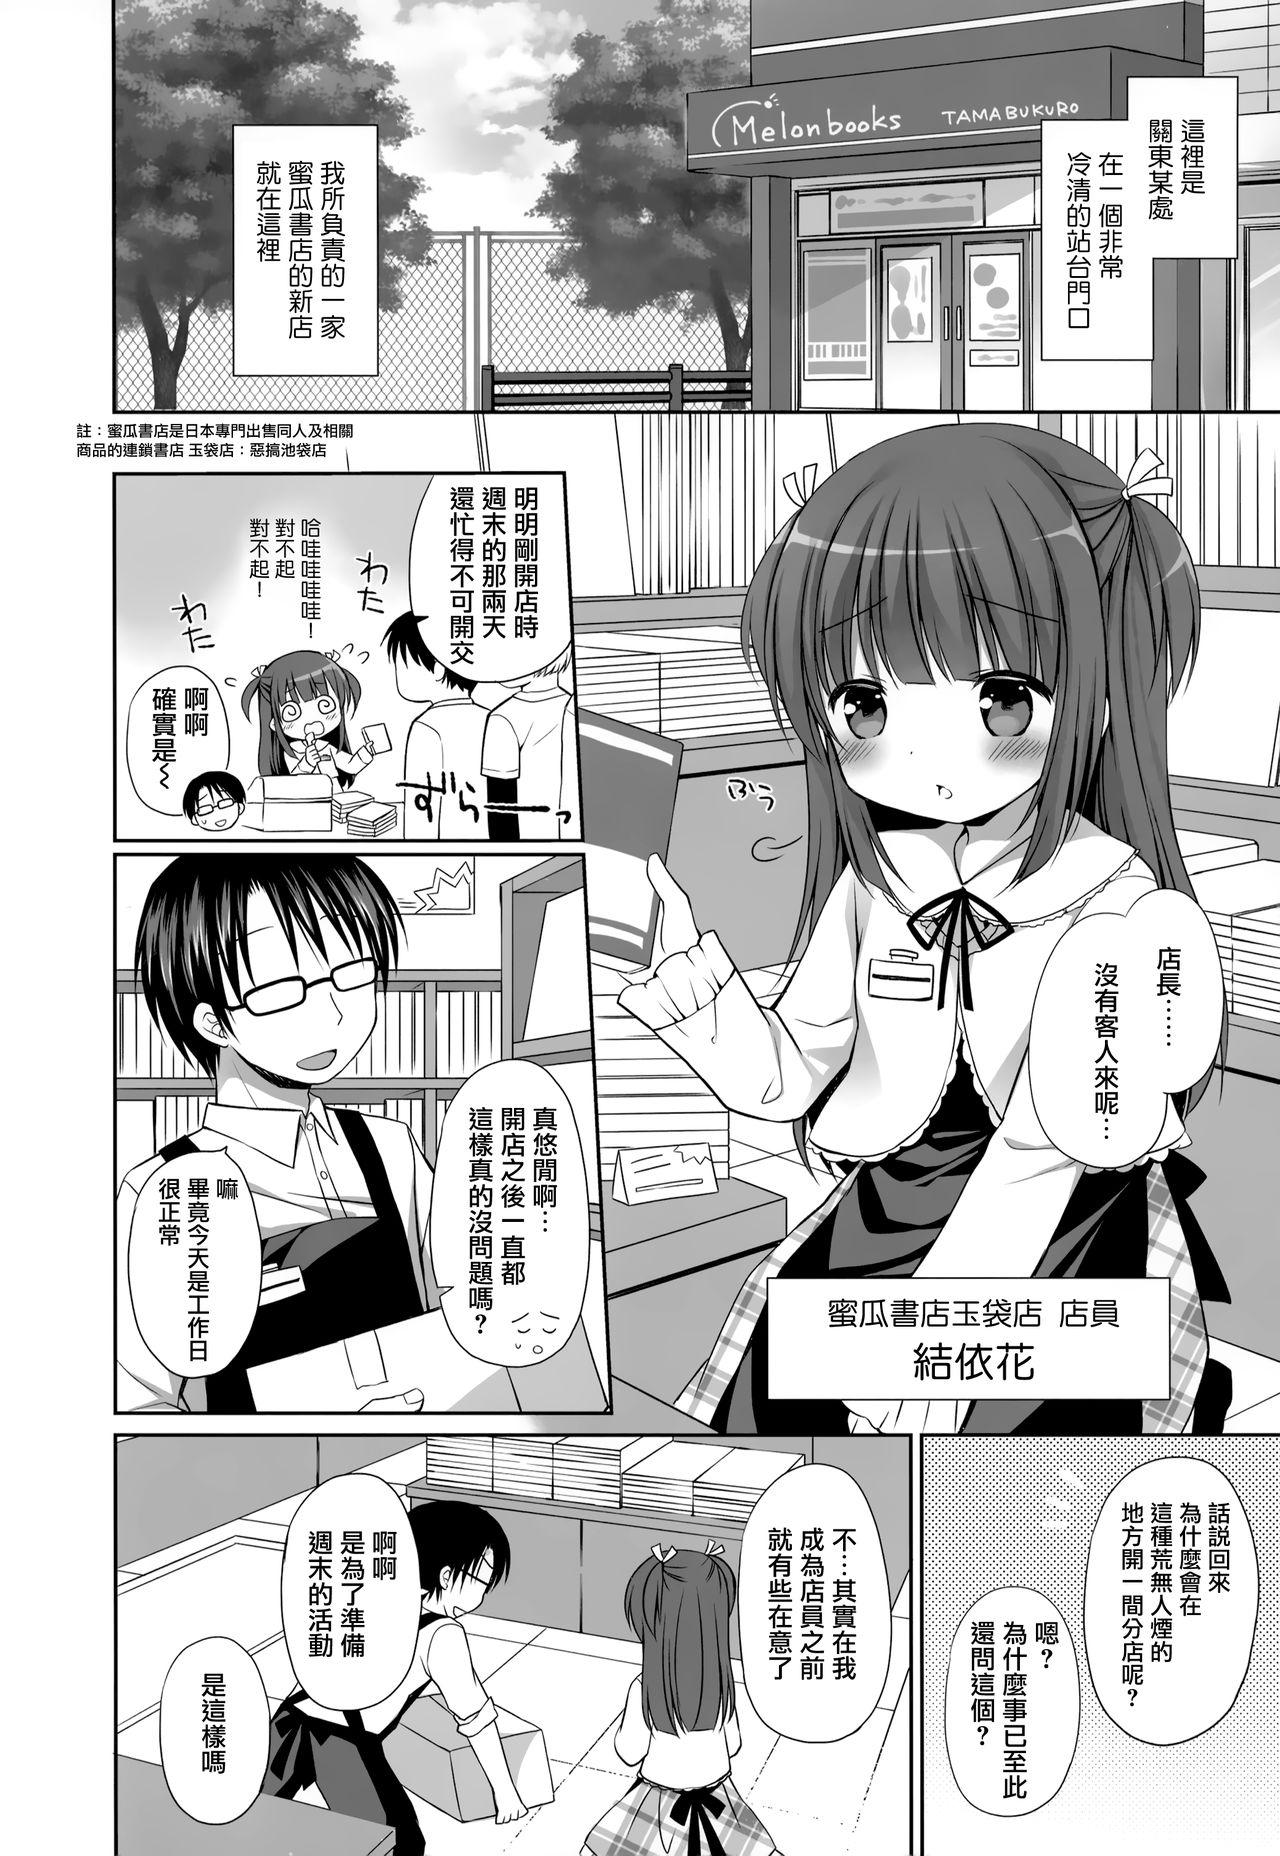 Tats メロンでエロエロ Anime - Page 3